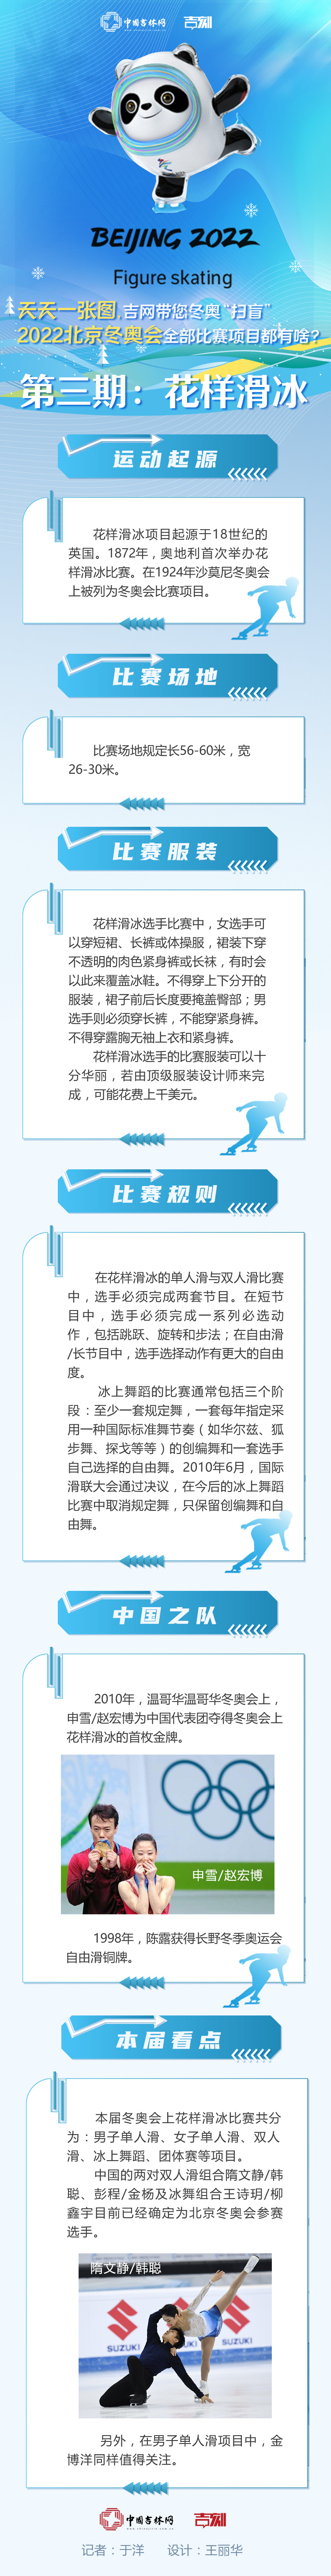 天天一张图， 吉网带您“扫盲”丨2022北京冬奥会比赛项目都有啥？第三期 花样滑冰